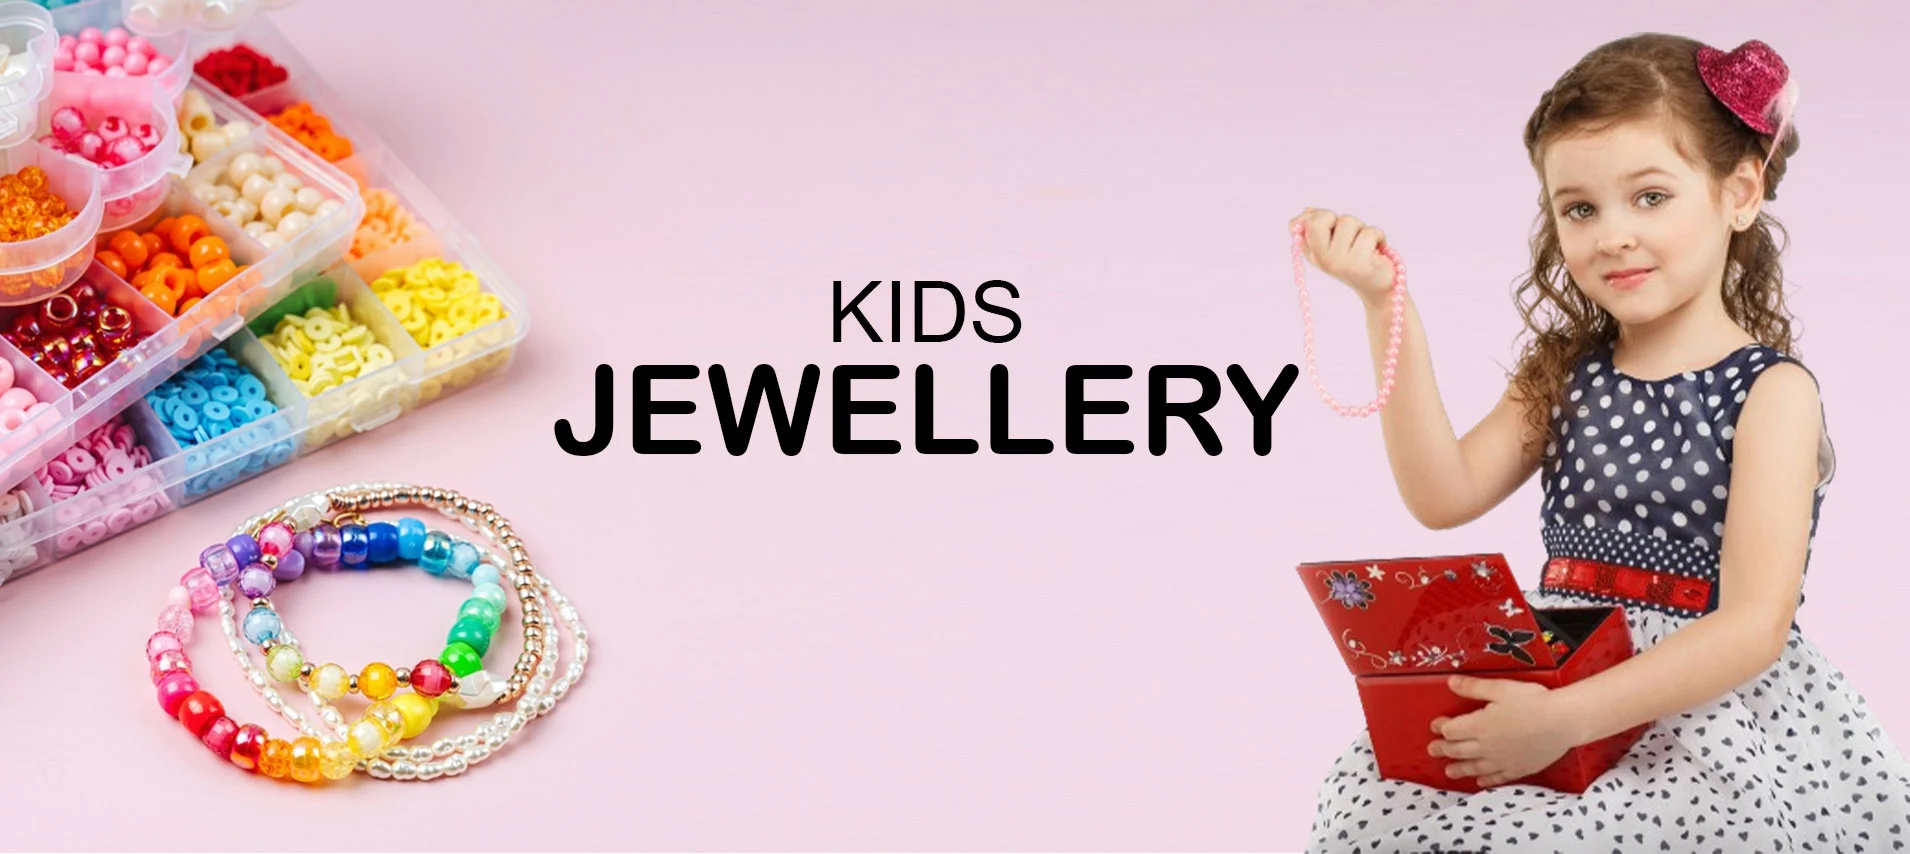 Kids Jewelry Online